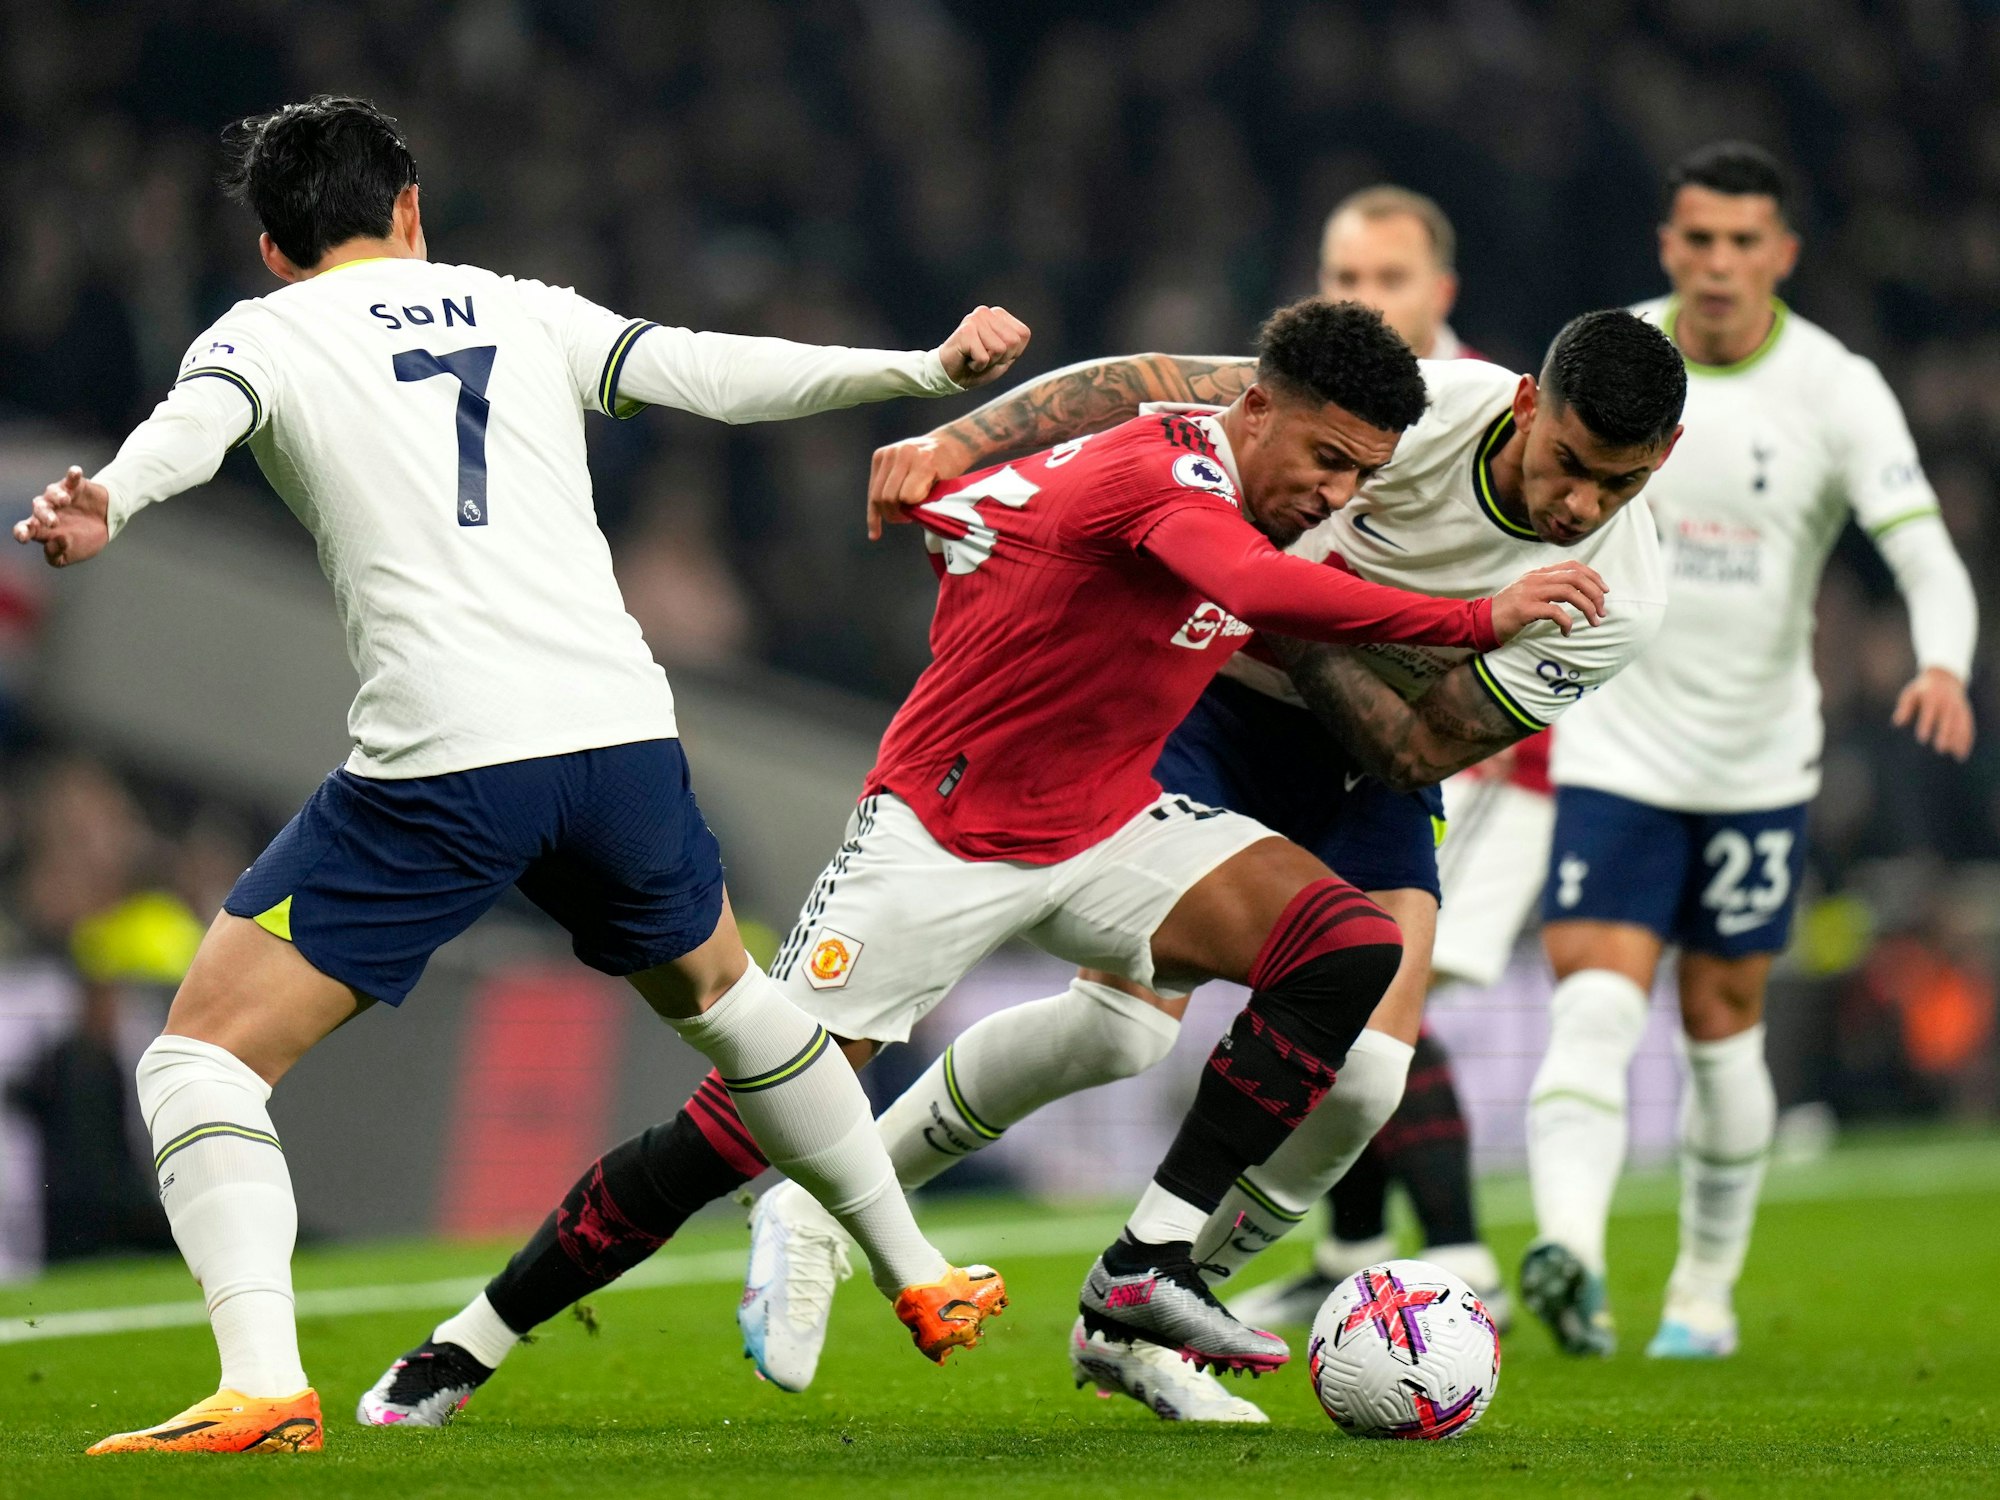 Jadon Sancho von Manchester United verteidigt den Ball gegen mehrere Spieler von Tottenham Hotspur.